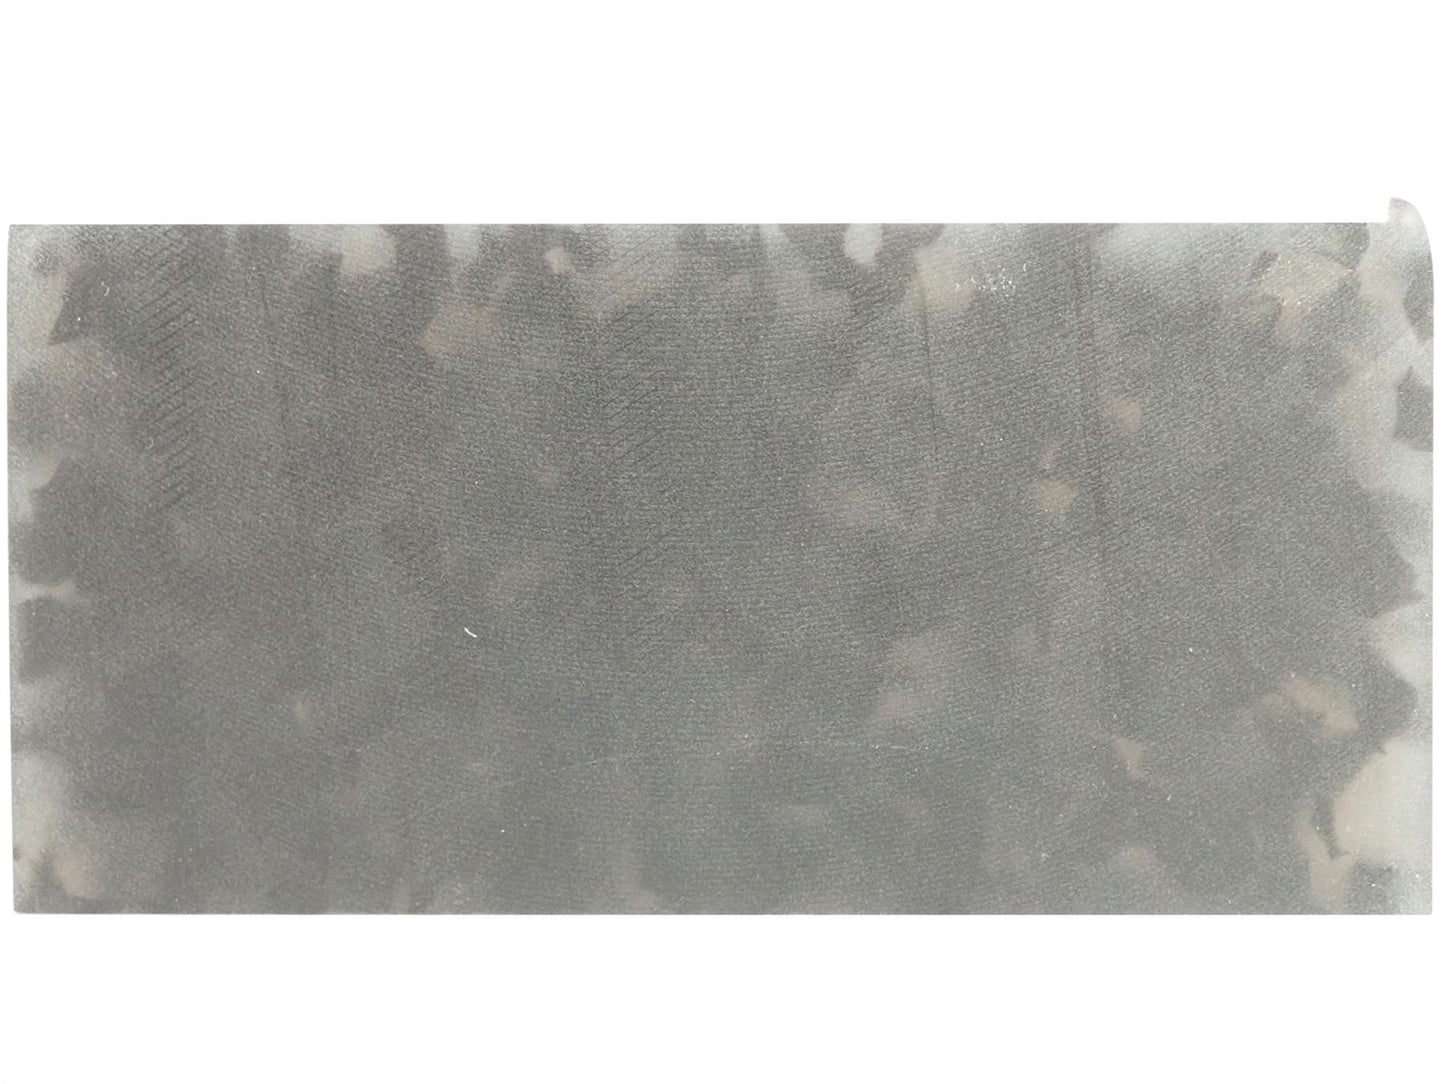 Turners' Mill N8 Tortoiseshell Cellulose Acetate Block - 160x80x20mm (6.3x3.15x0.79")